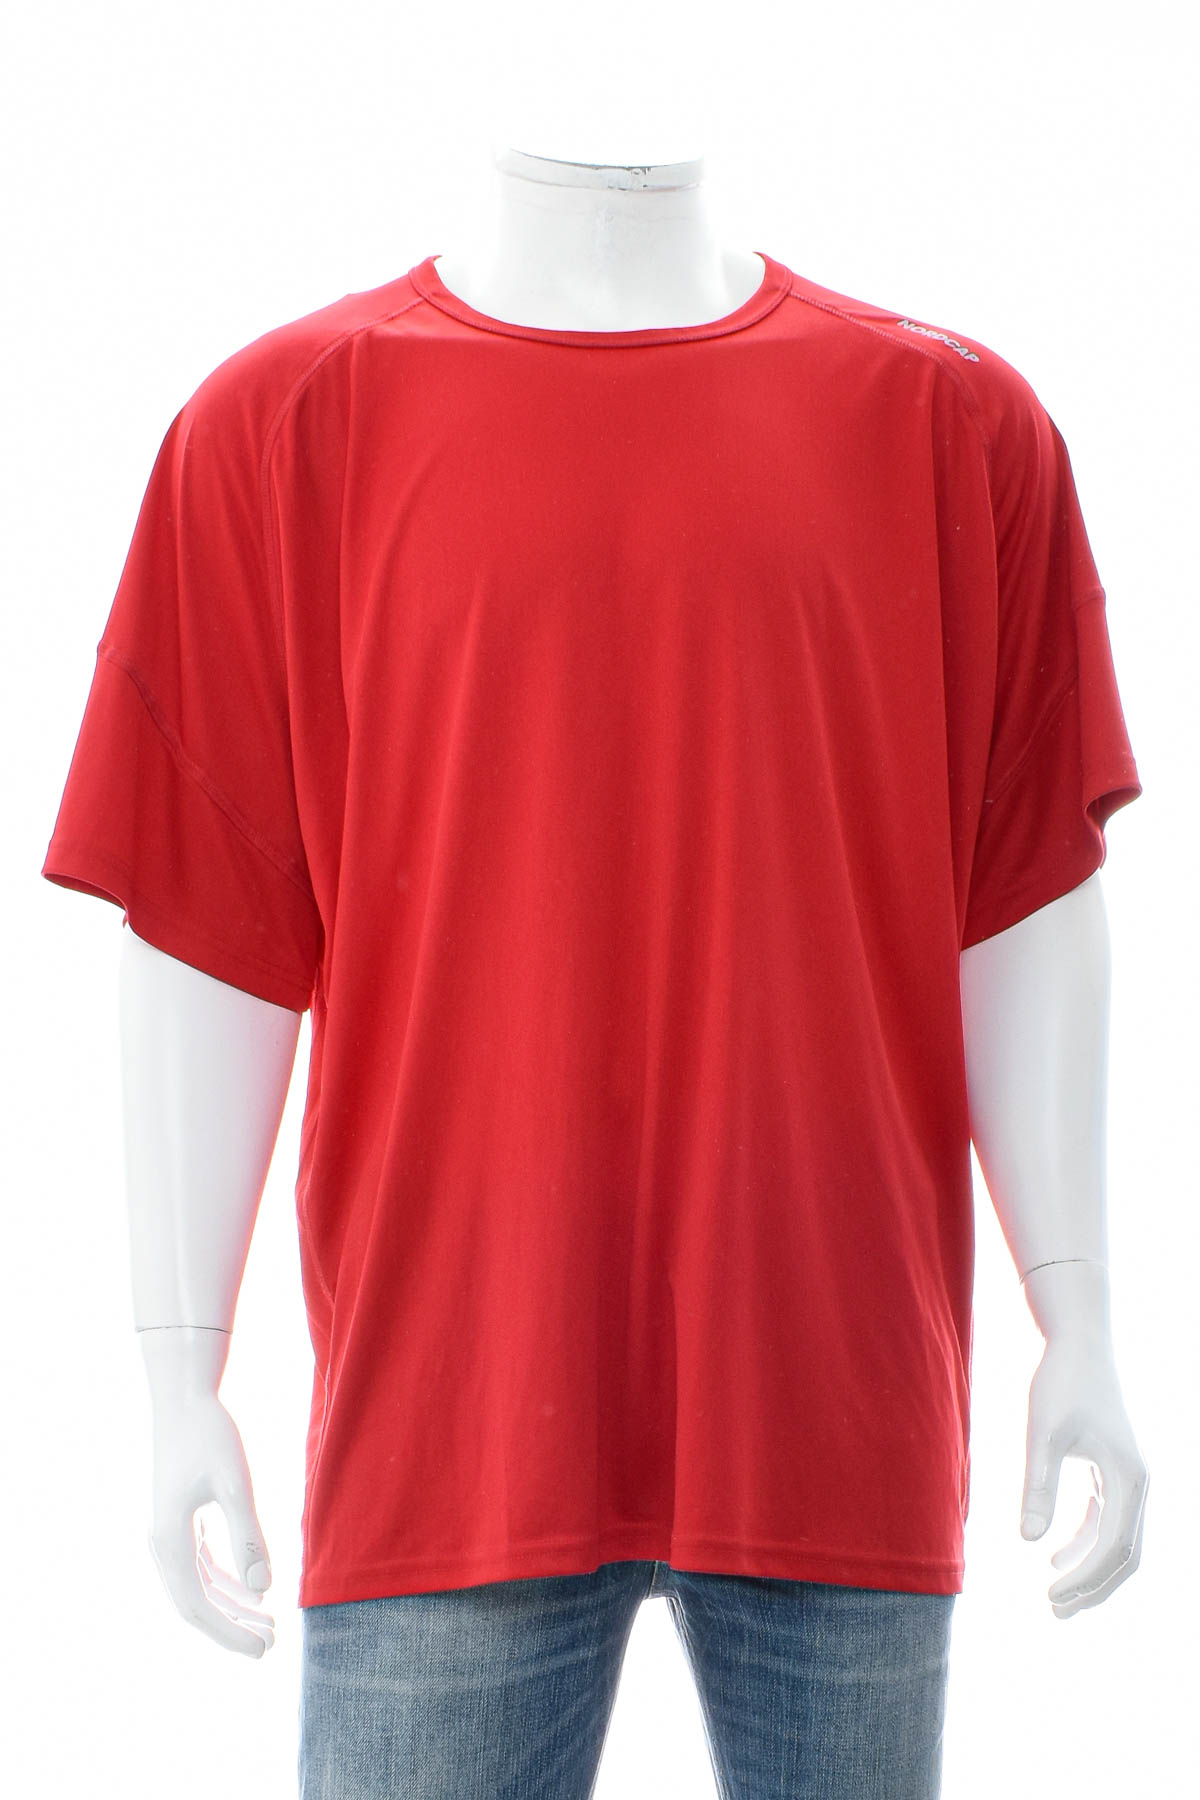 Ανδρικό μπλουζάκι - Nordcap - 0